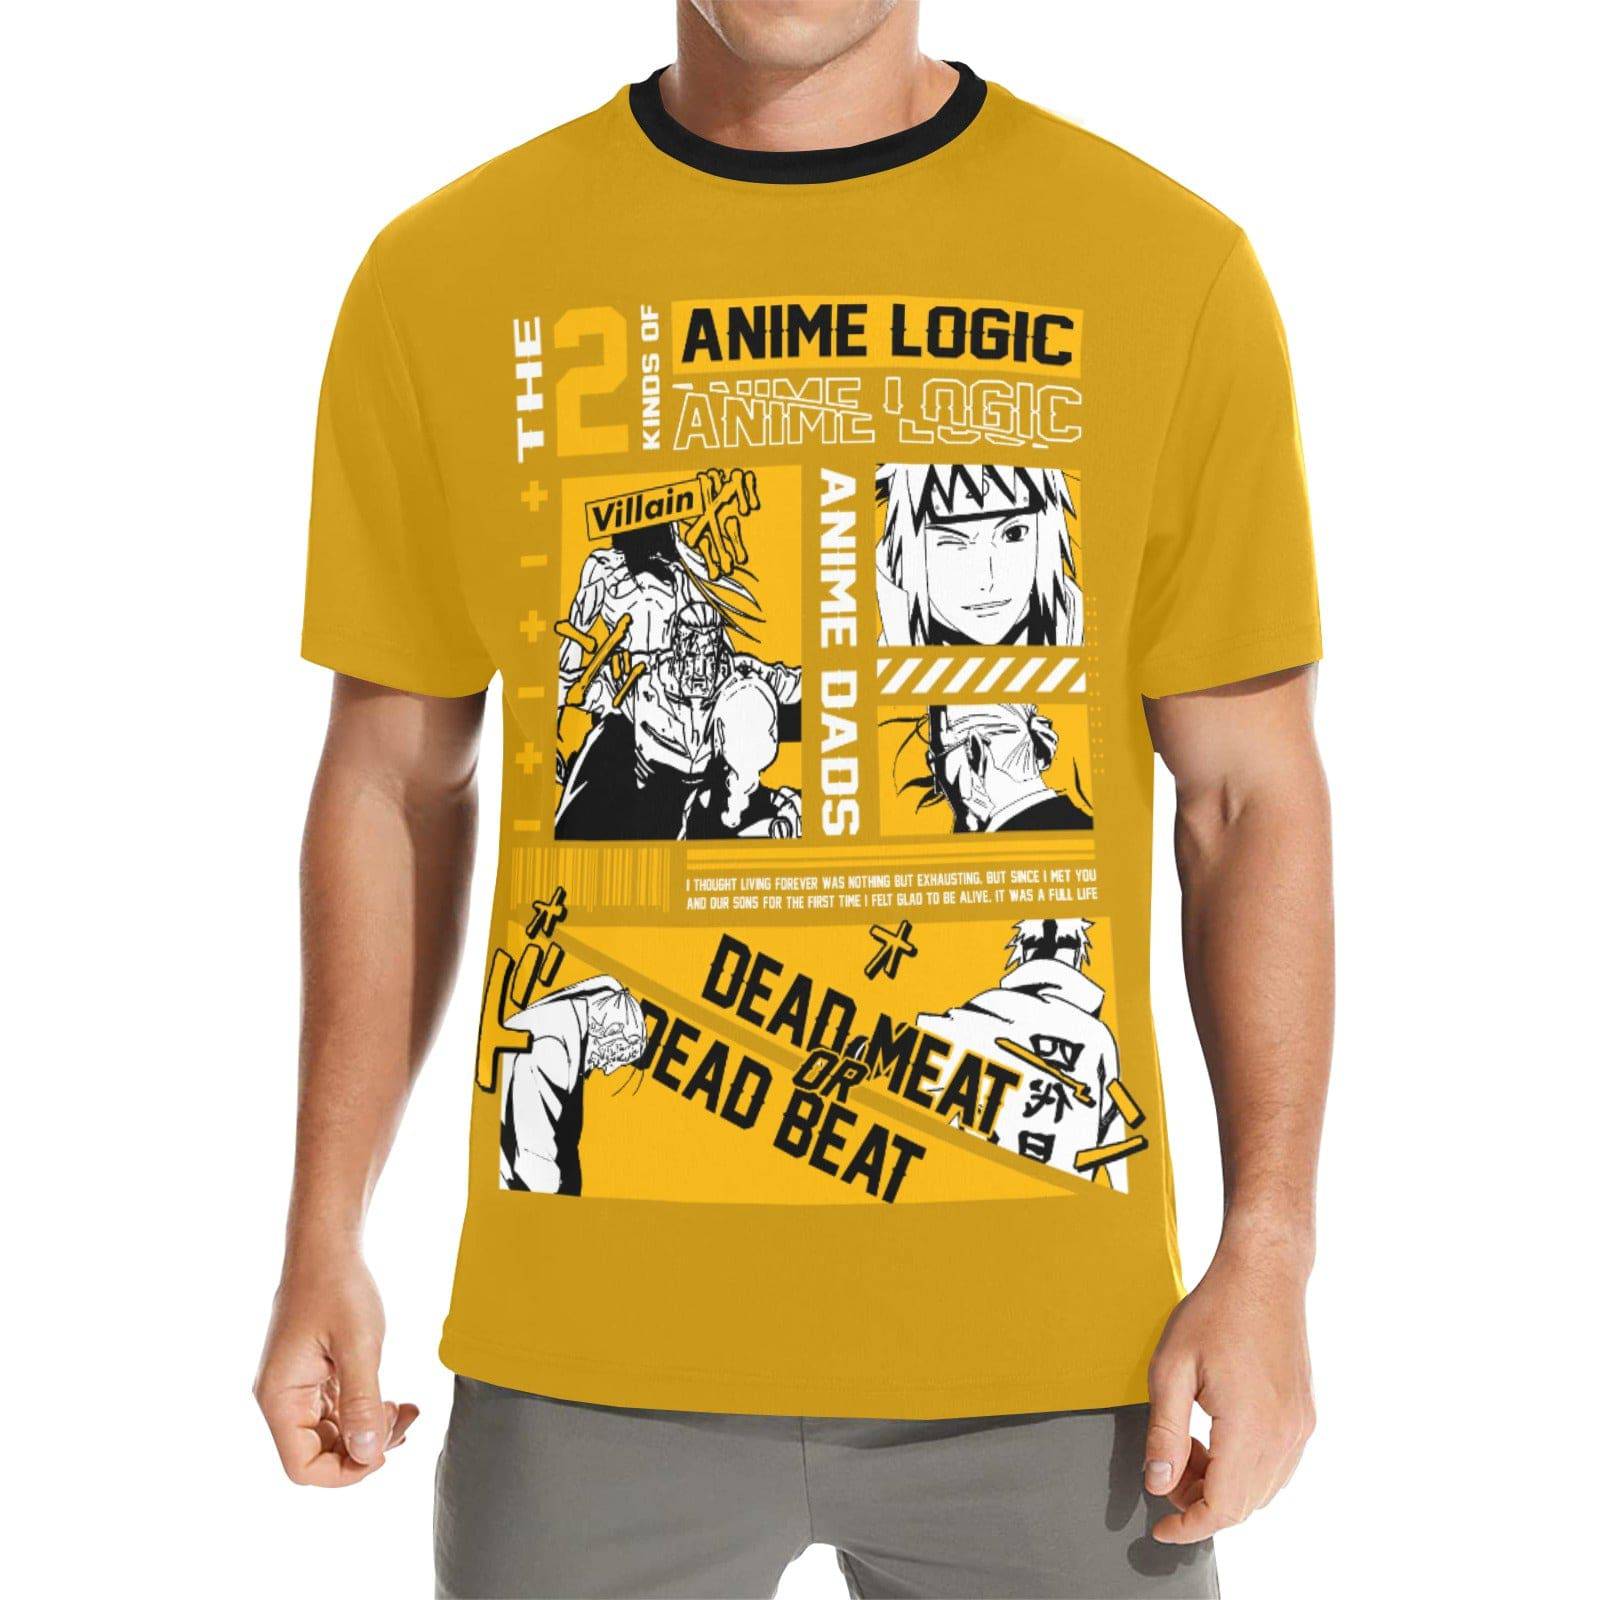 Power of anime logic | Pokémon Amino